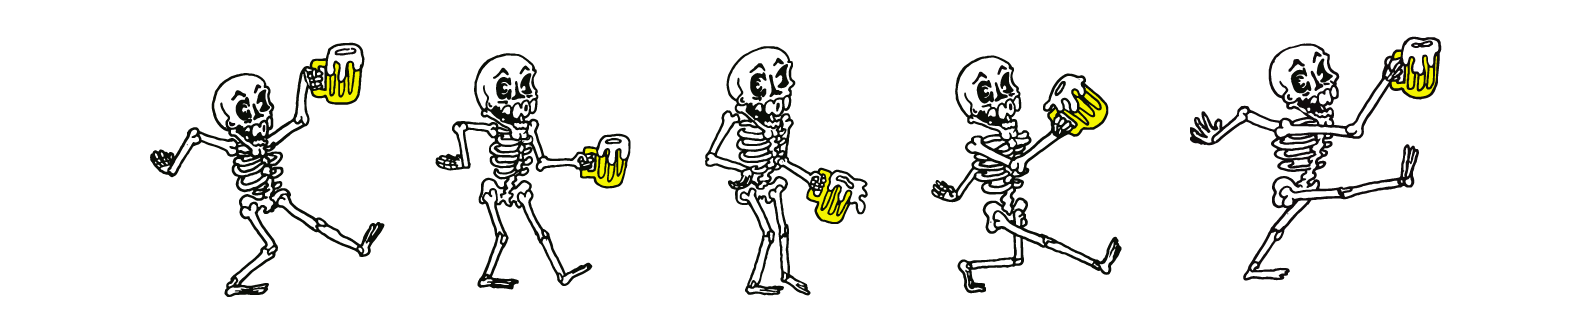 parade of skeletons illustration